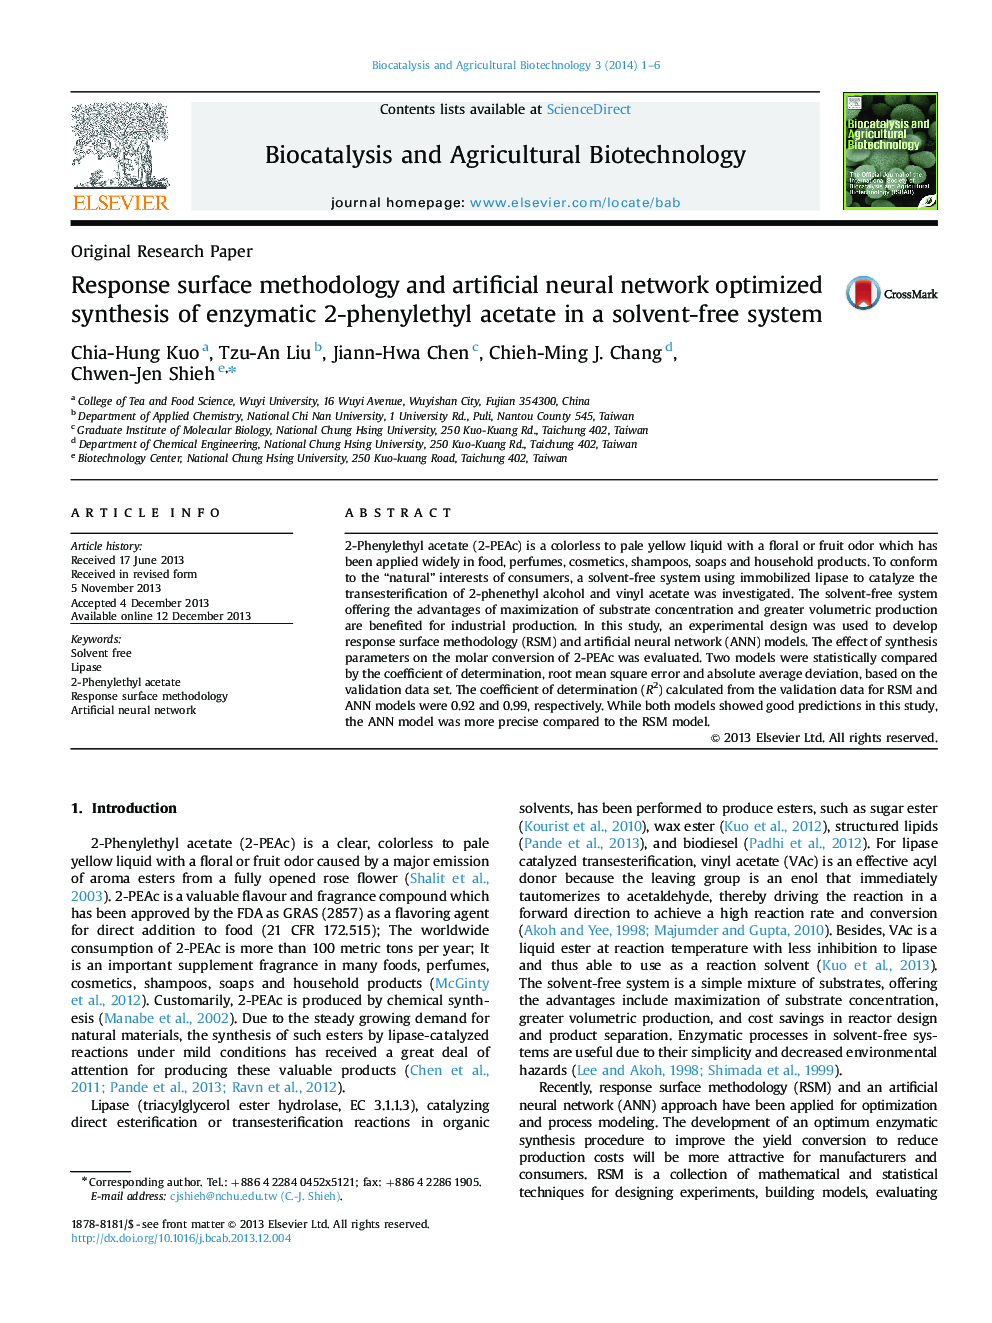 روش سطح پاسخ و شبکه عصبی مصنوعی بهینه سازی سنتز آنزیمی 2-فنیل اتیل استات در یک سیستم بدون حلال 